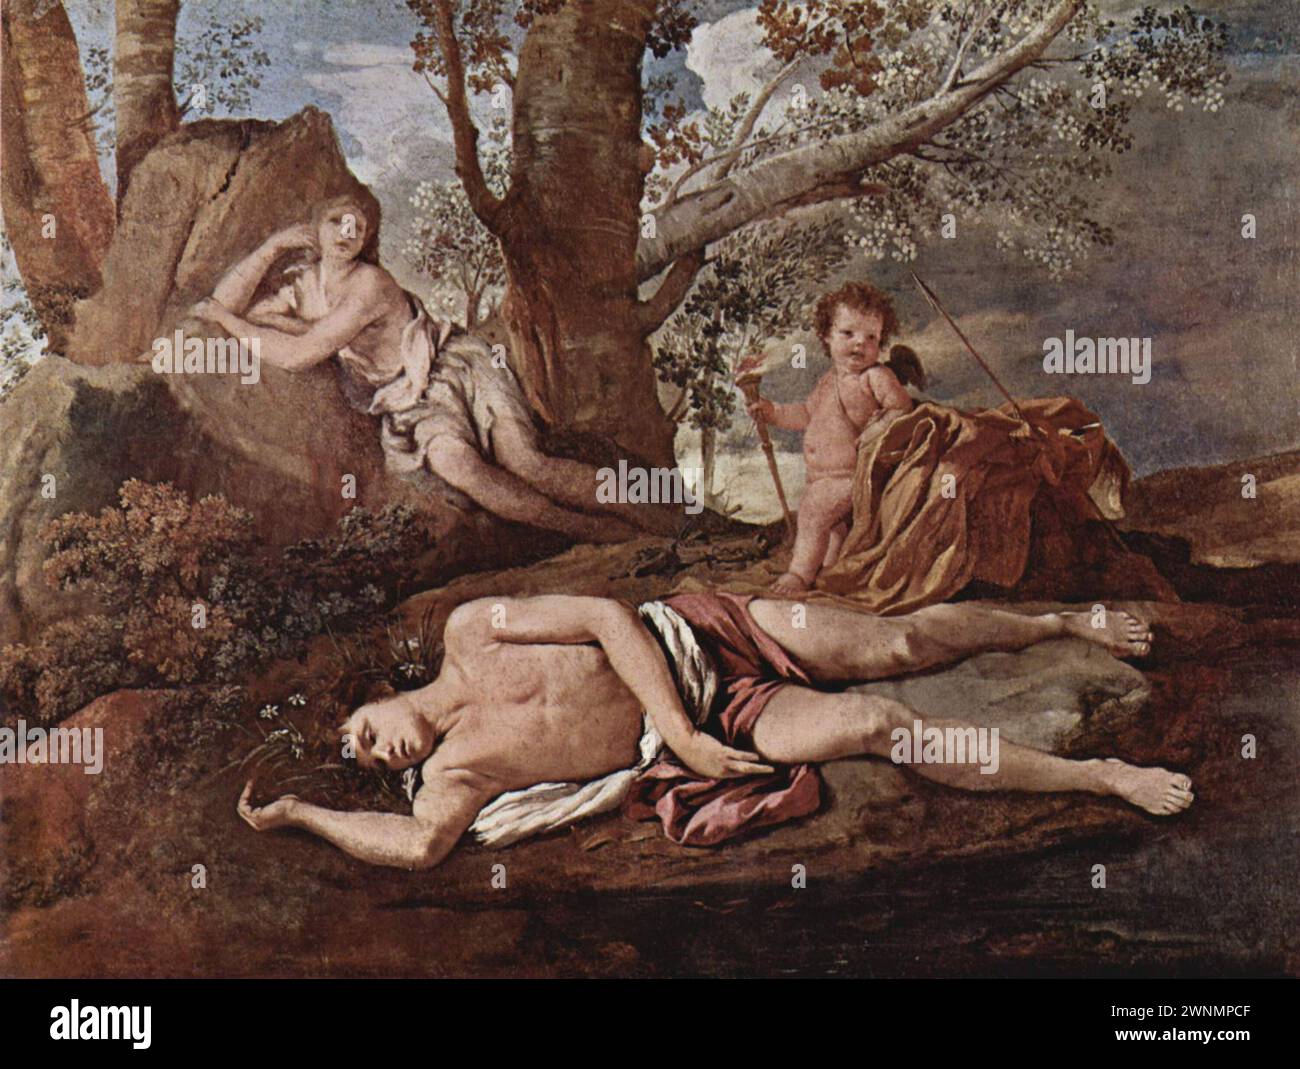 Echo and Narcissus ist ein Ölgemälde von 1627 und 1628 des französischen Künstlers Nicolas Poussin. Griechische Mythologie. Laut Ovids Metamorphosen verliebte sich die Nymphe Echo in Narcissus, aber er lehnte sie ab Stockfoto